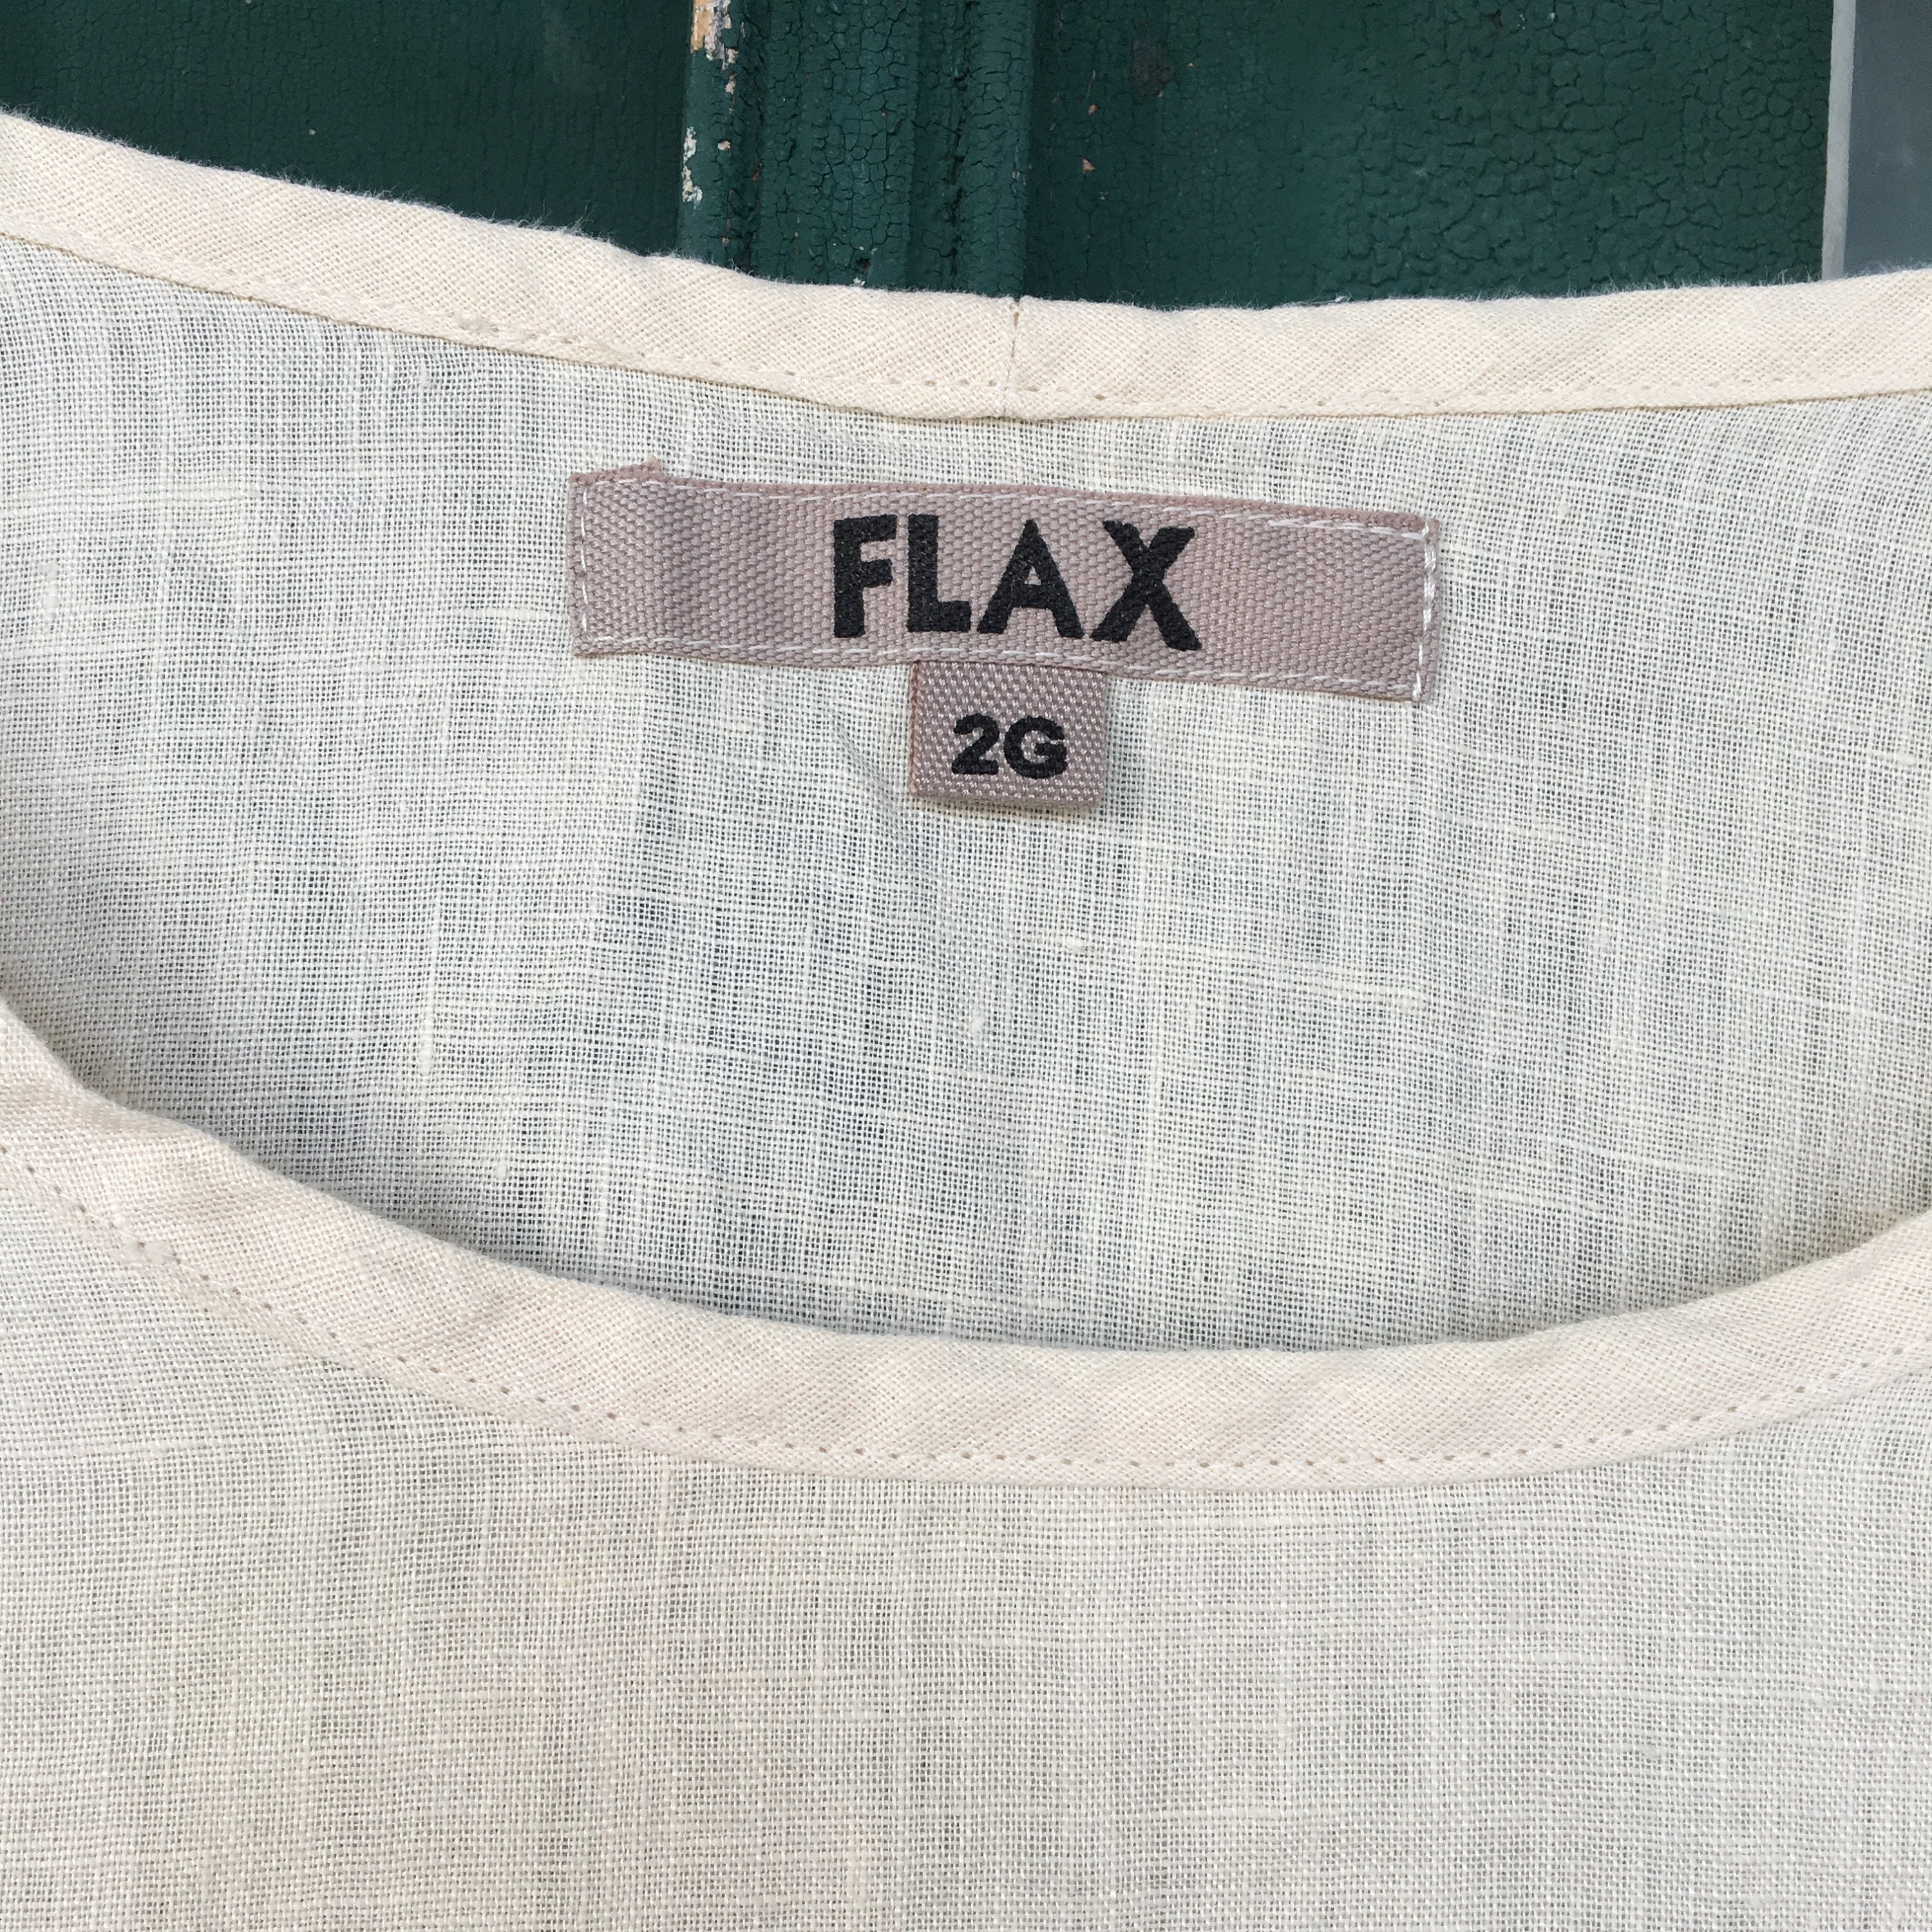 FLAX Designs Short-Sleeve Tee -2G/2X- Ivory Lightweight Linen